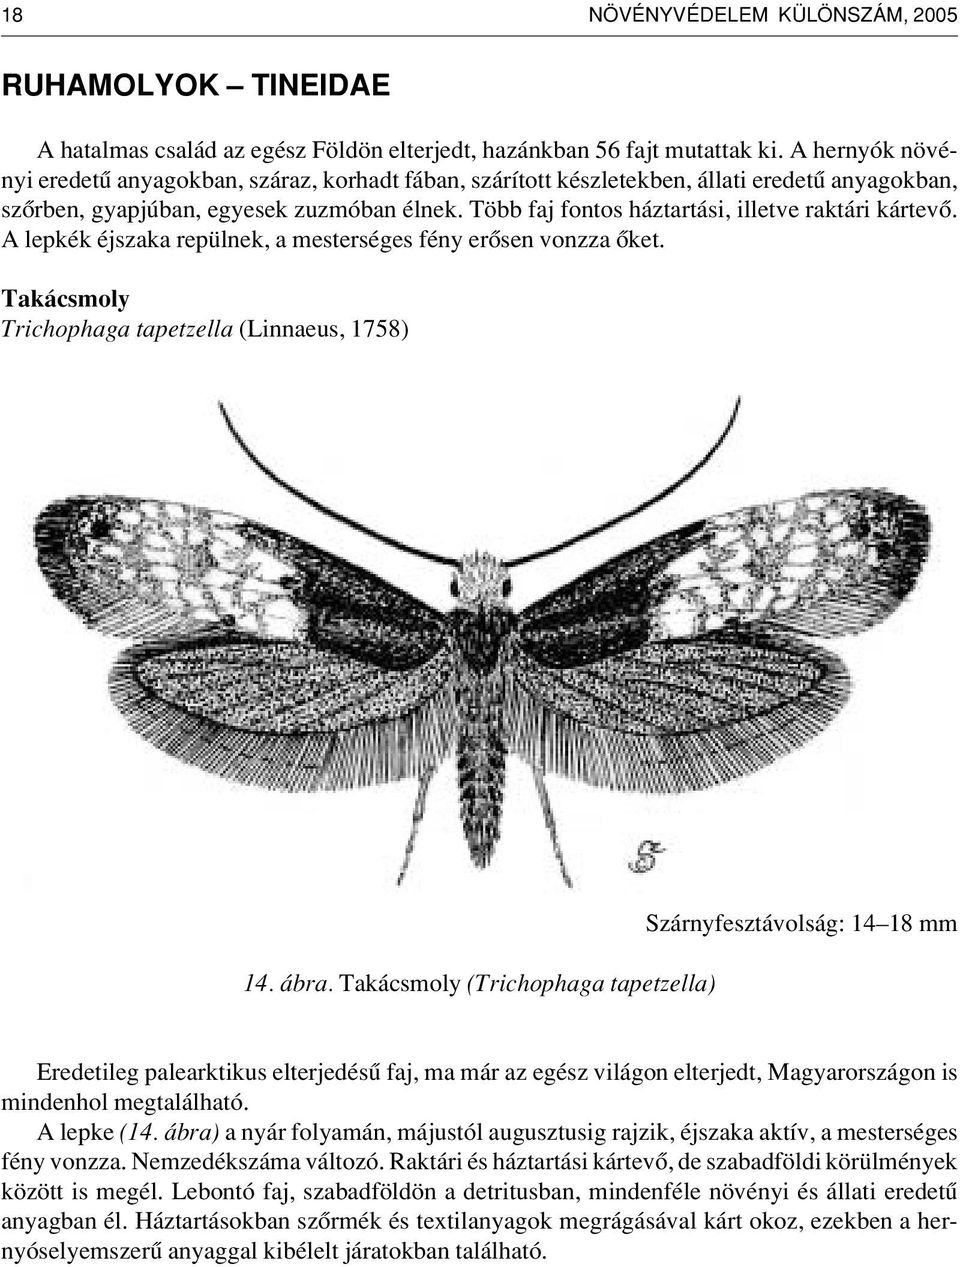 Több faj fontos háztartási, illetve raktári kártevô. A lepkék éjszaka repülnek, a mesterséges fény erôsen vonzza ôket. Takácsmoly Trichophaga tapetzella (Linnaeus, 1758) 14. ábra.